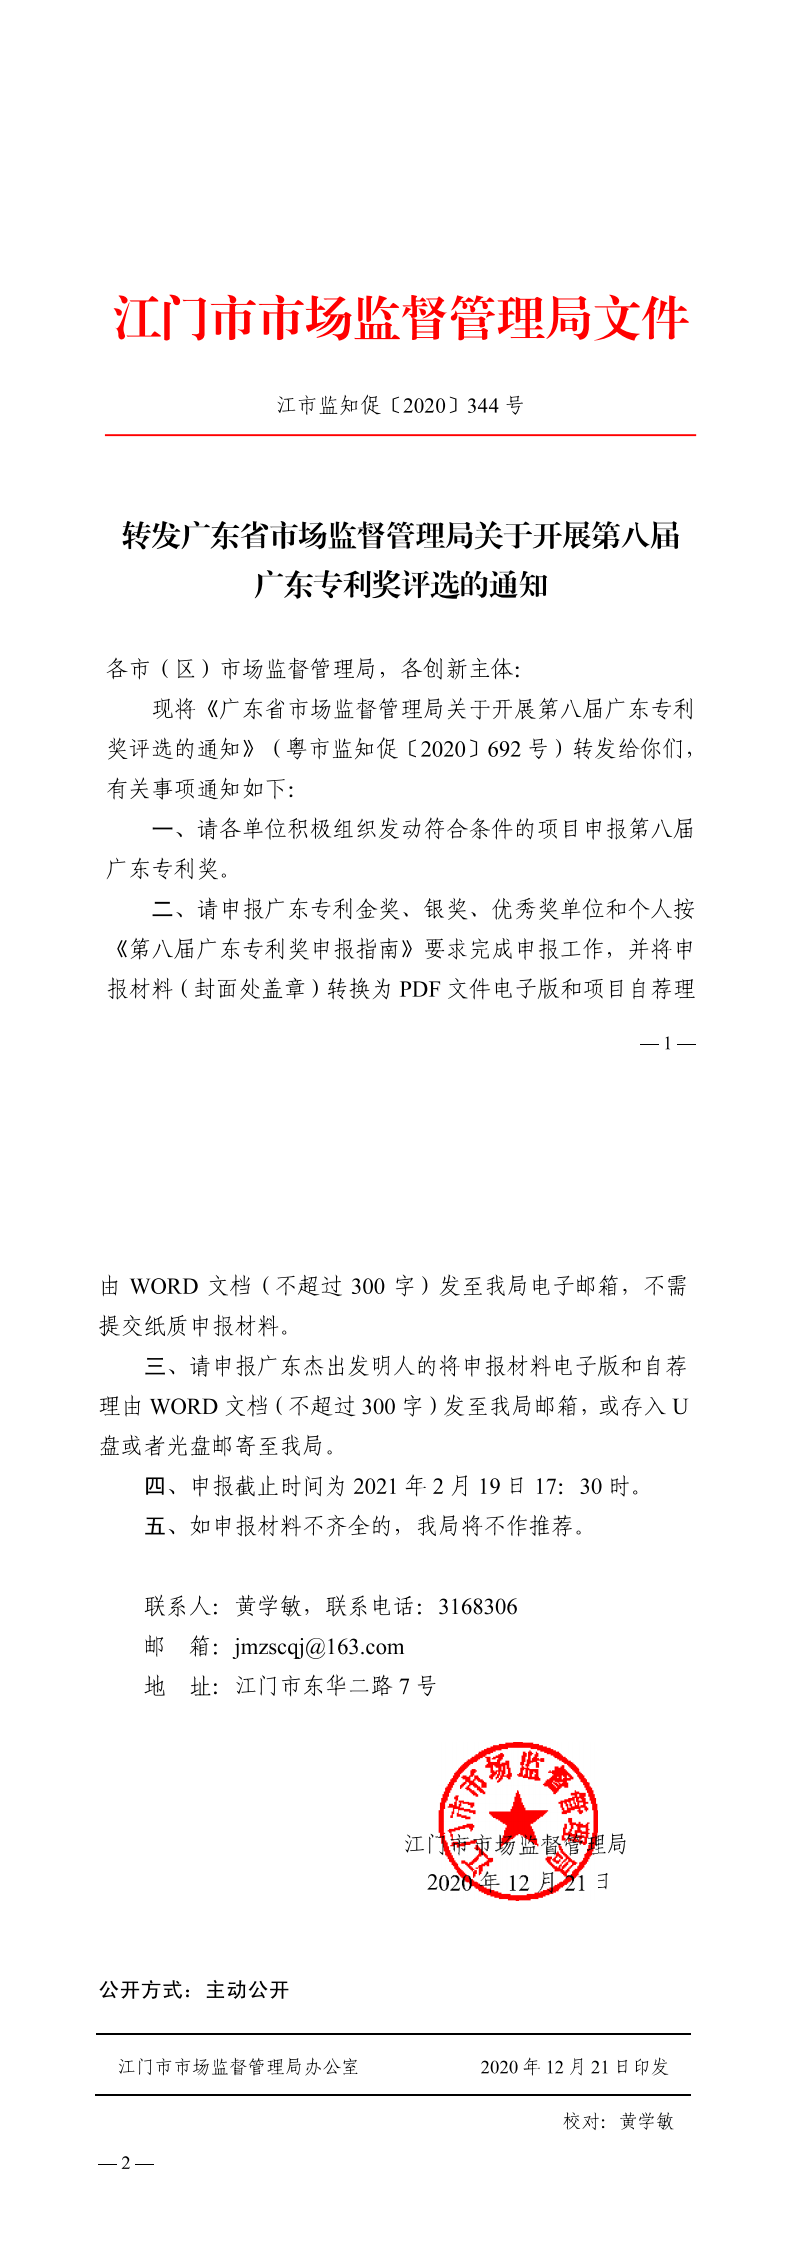 转发广东省市场监督管理局关于开展第八届广东专利奖评选的通知_0.png